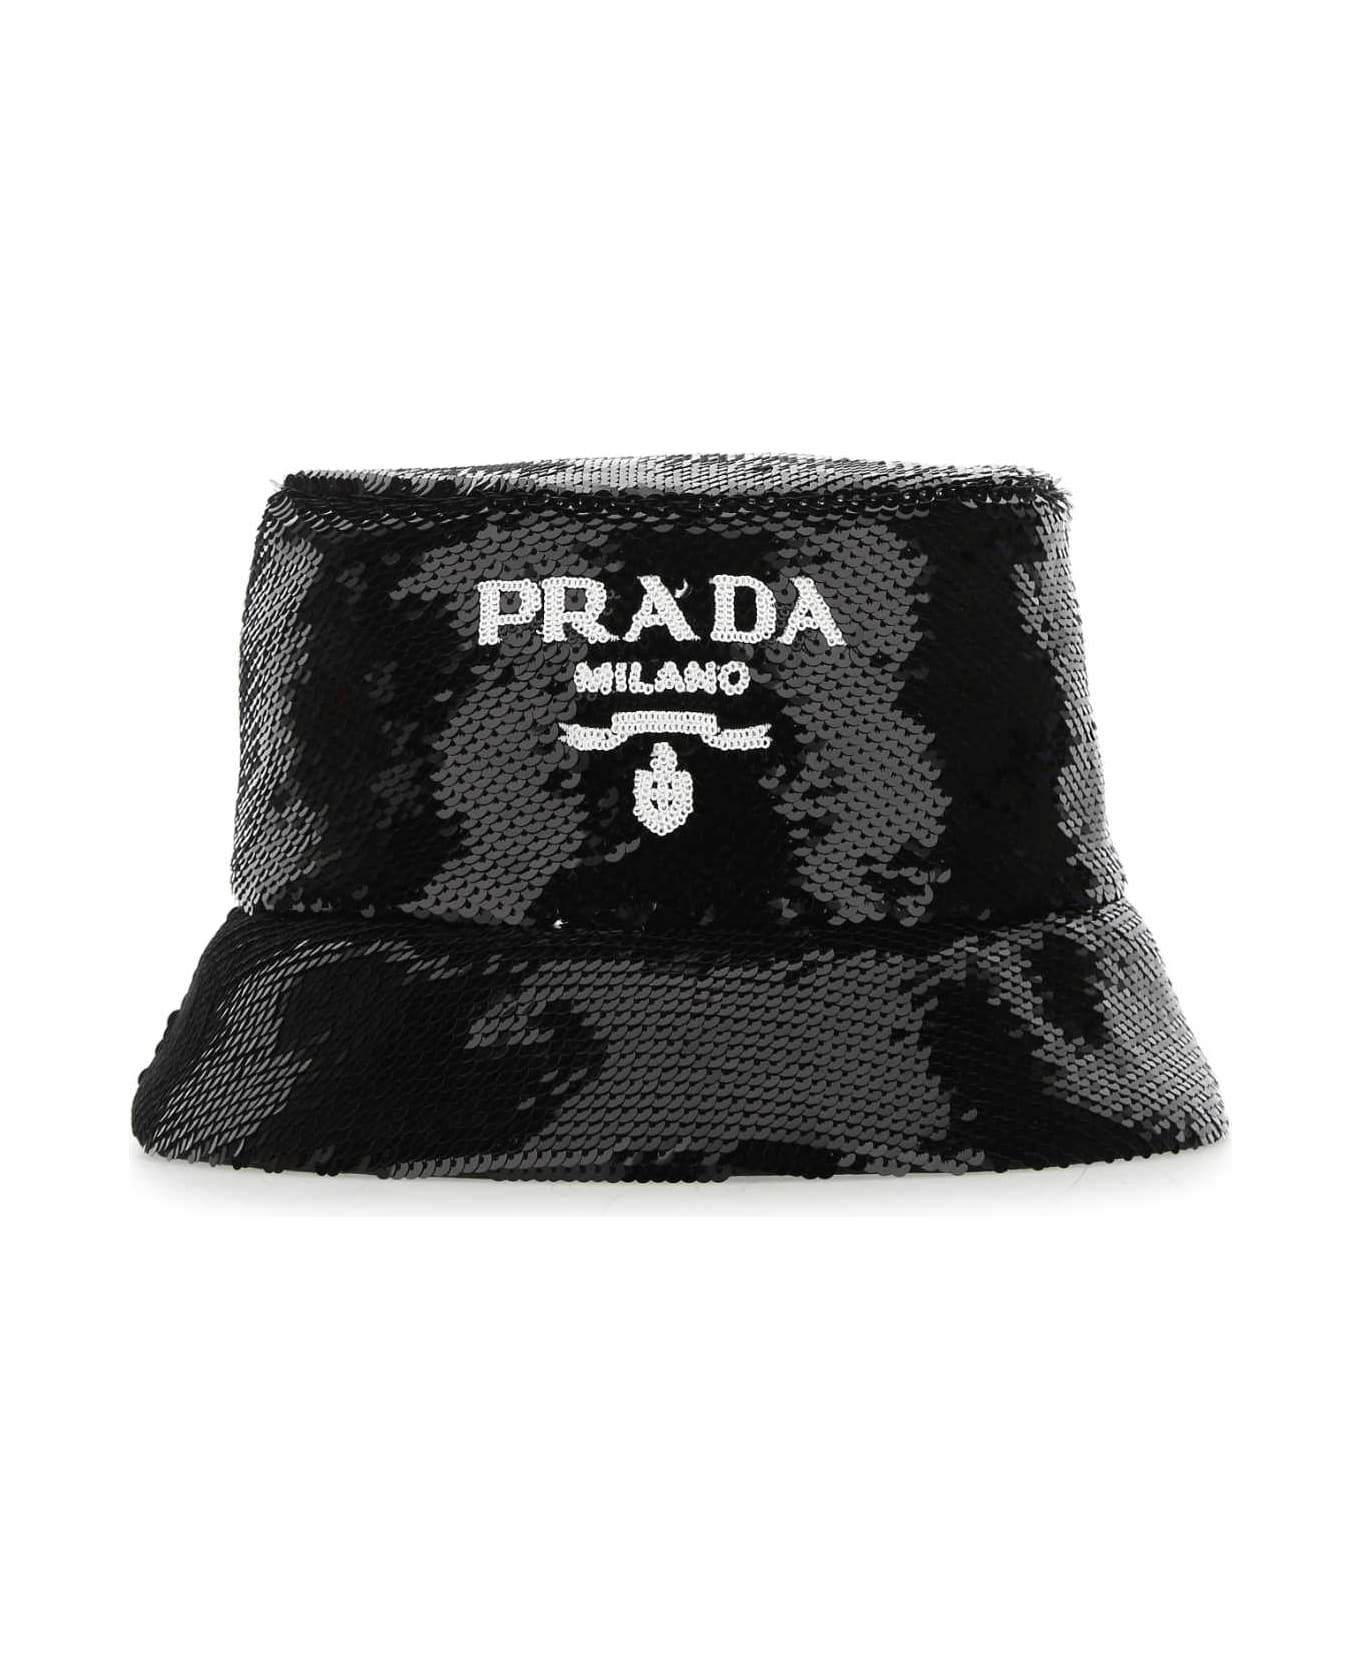 Prada Black Sequins Bucket Hat - F0967